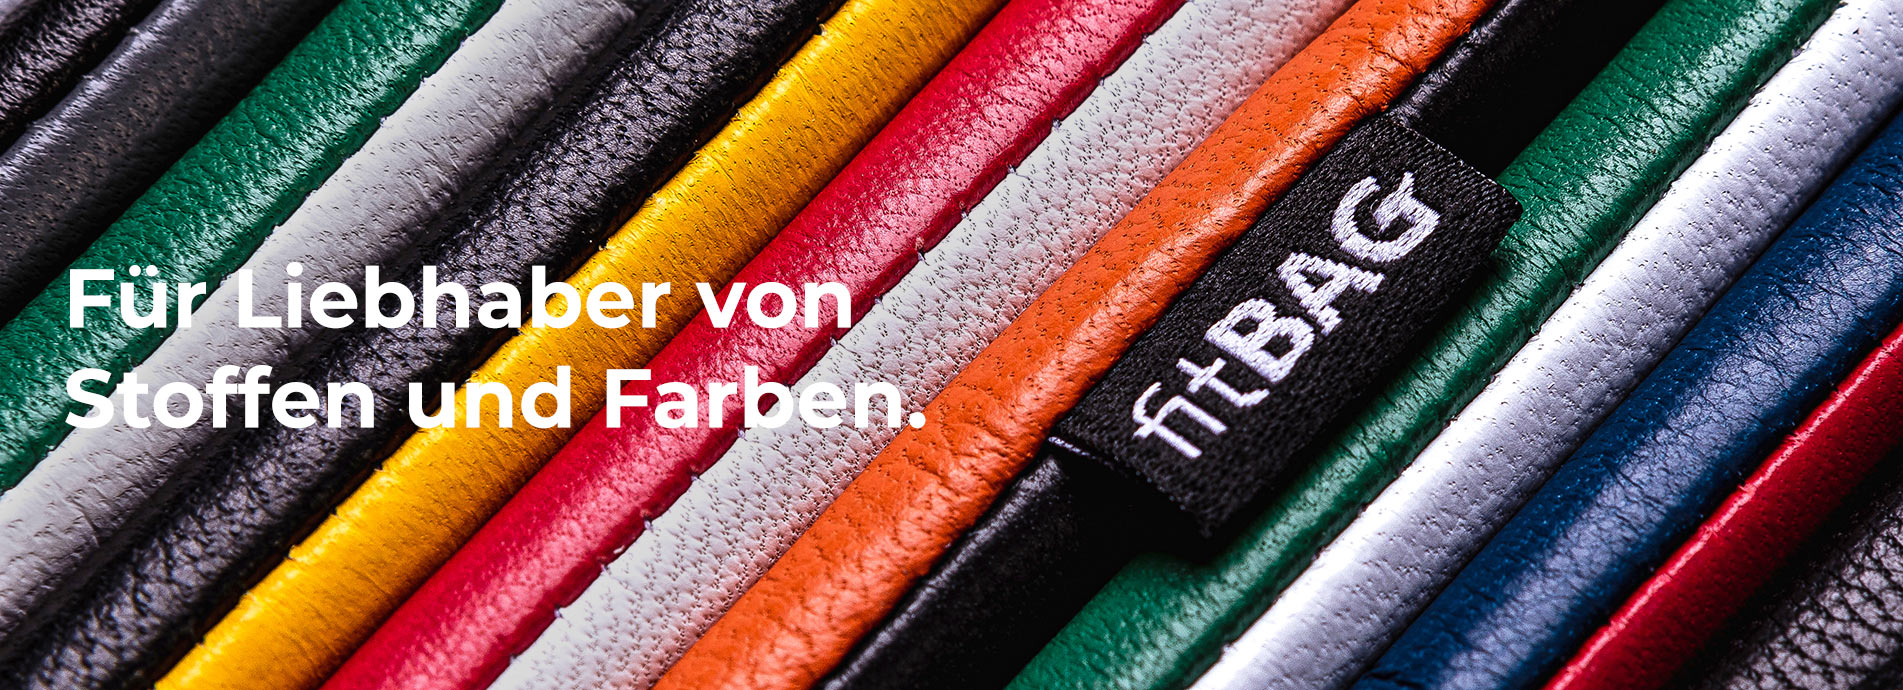 Made in Germany fitBAG Jive Braun Handytasche Tasche aus Textil-Stoff mit Microfaserinnenfutter f/ür LG G4 H/ülle mit Reinigungsfunktion